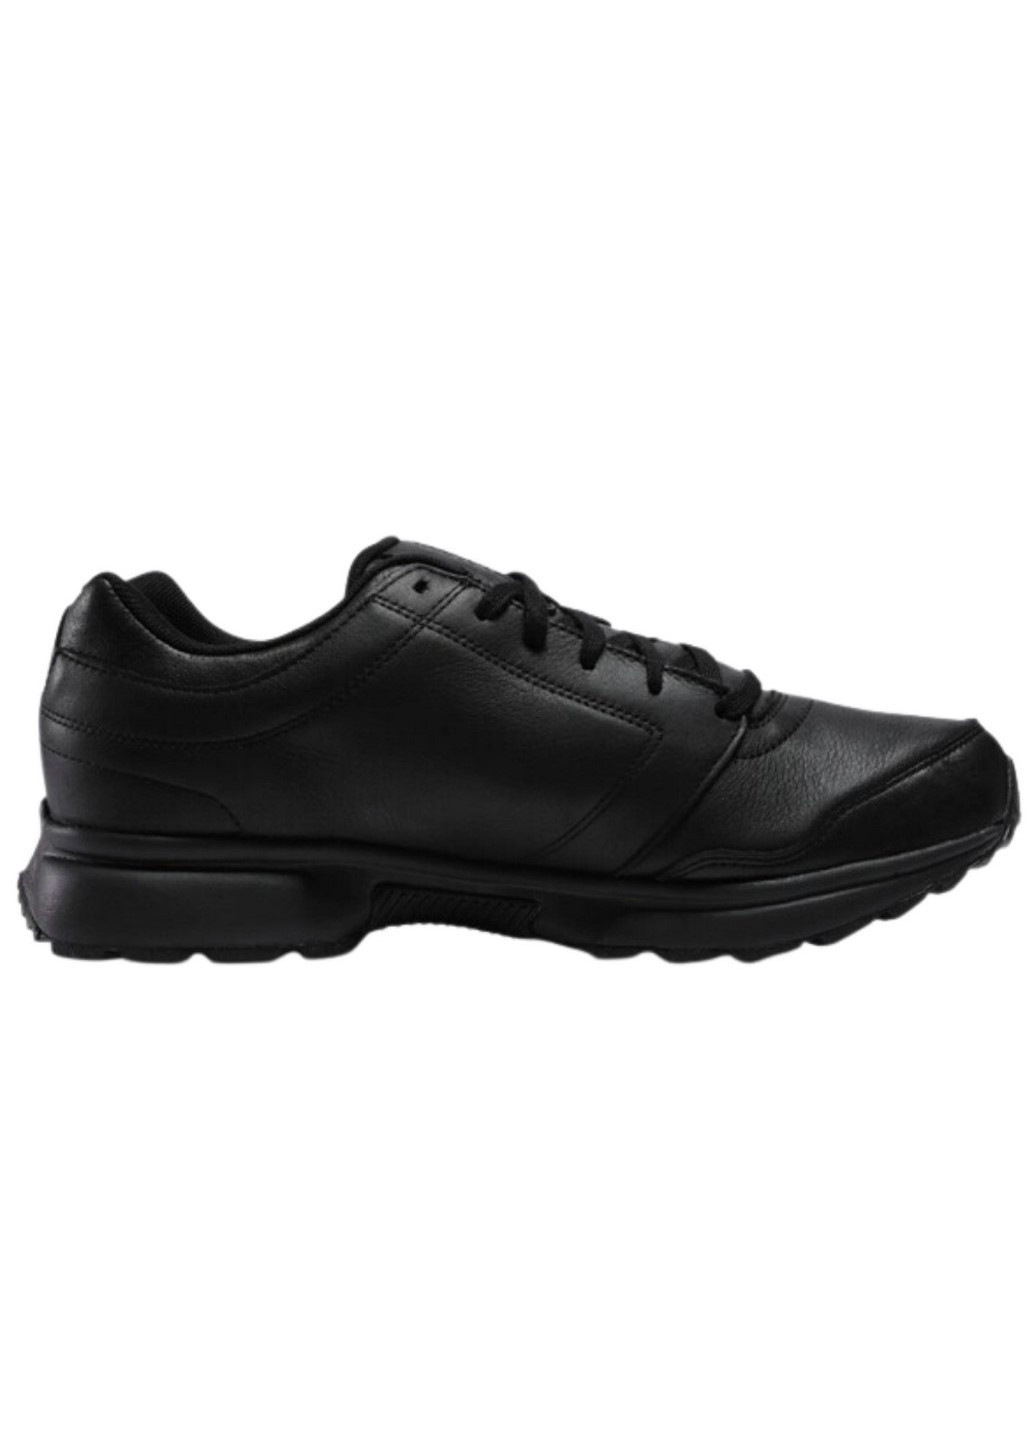 Черные демисезонные мужские повседневные кроссовки elite stride gtx iv v54328 Reebok